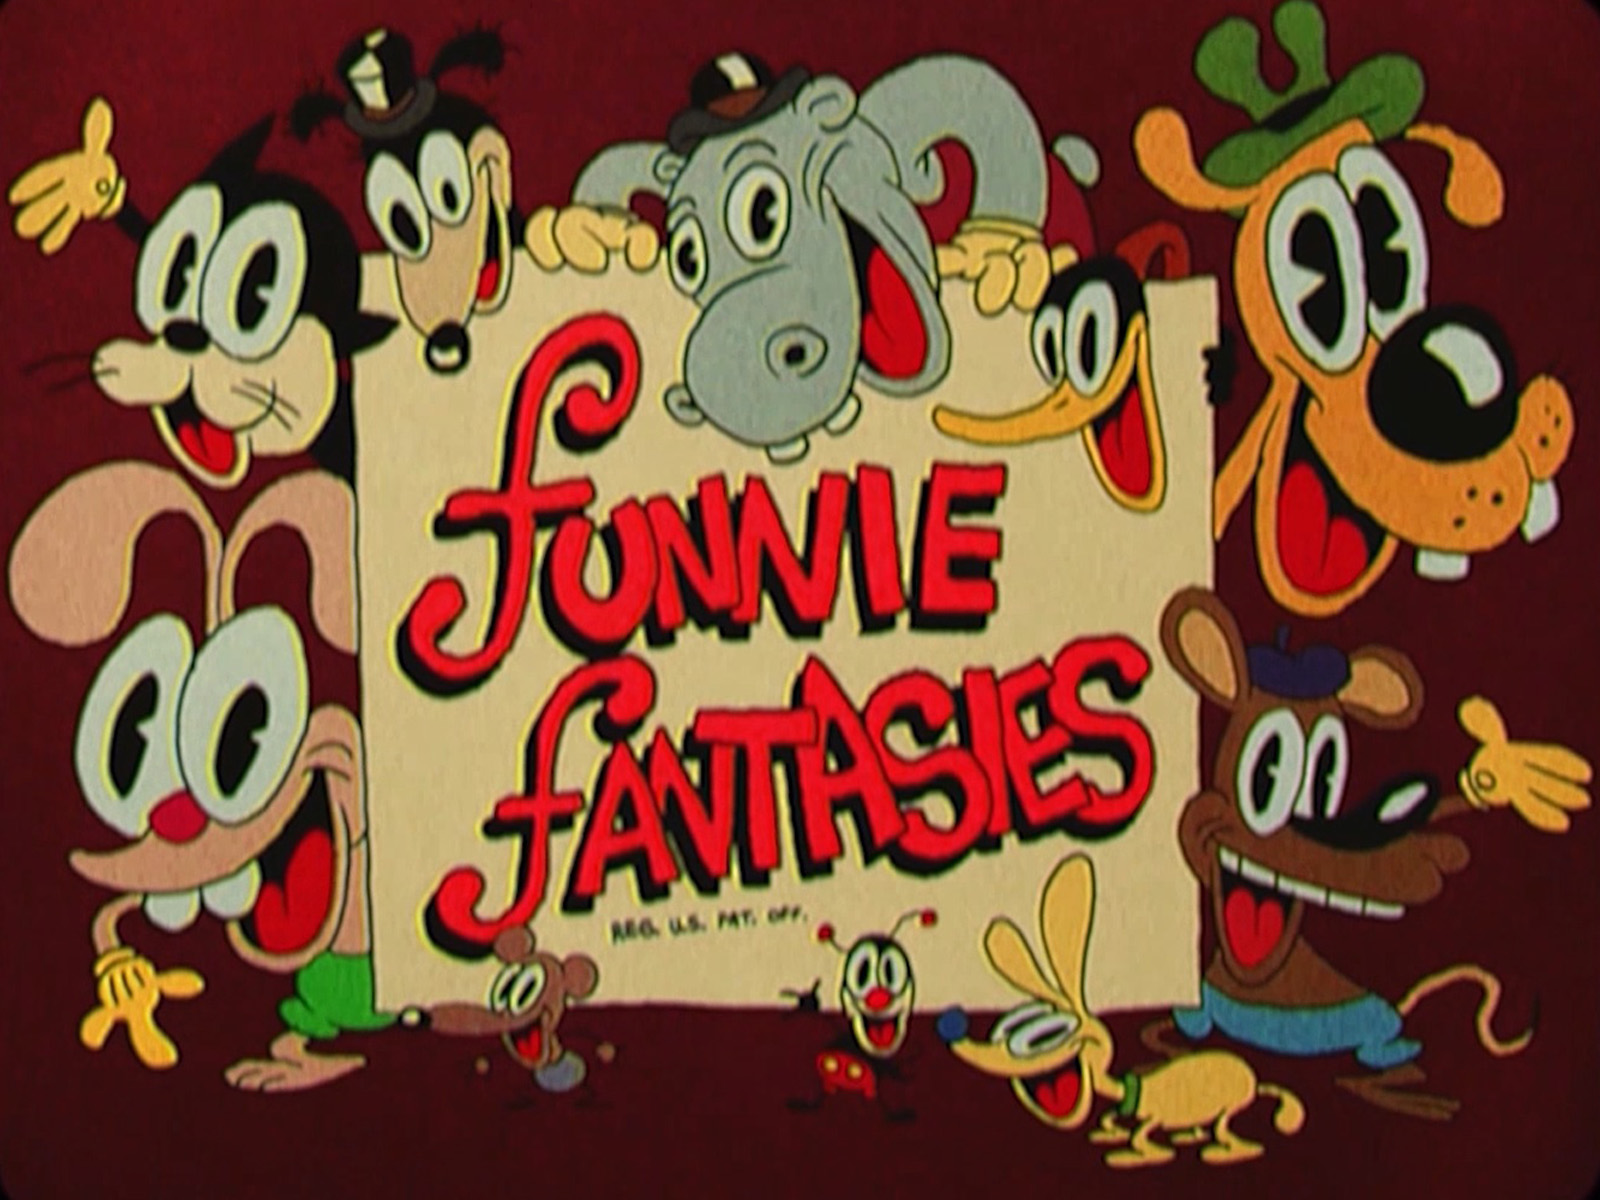 Una rótulo de introducción con las palabras "funnie fantasies" rodeadas por varios personajes animales.